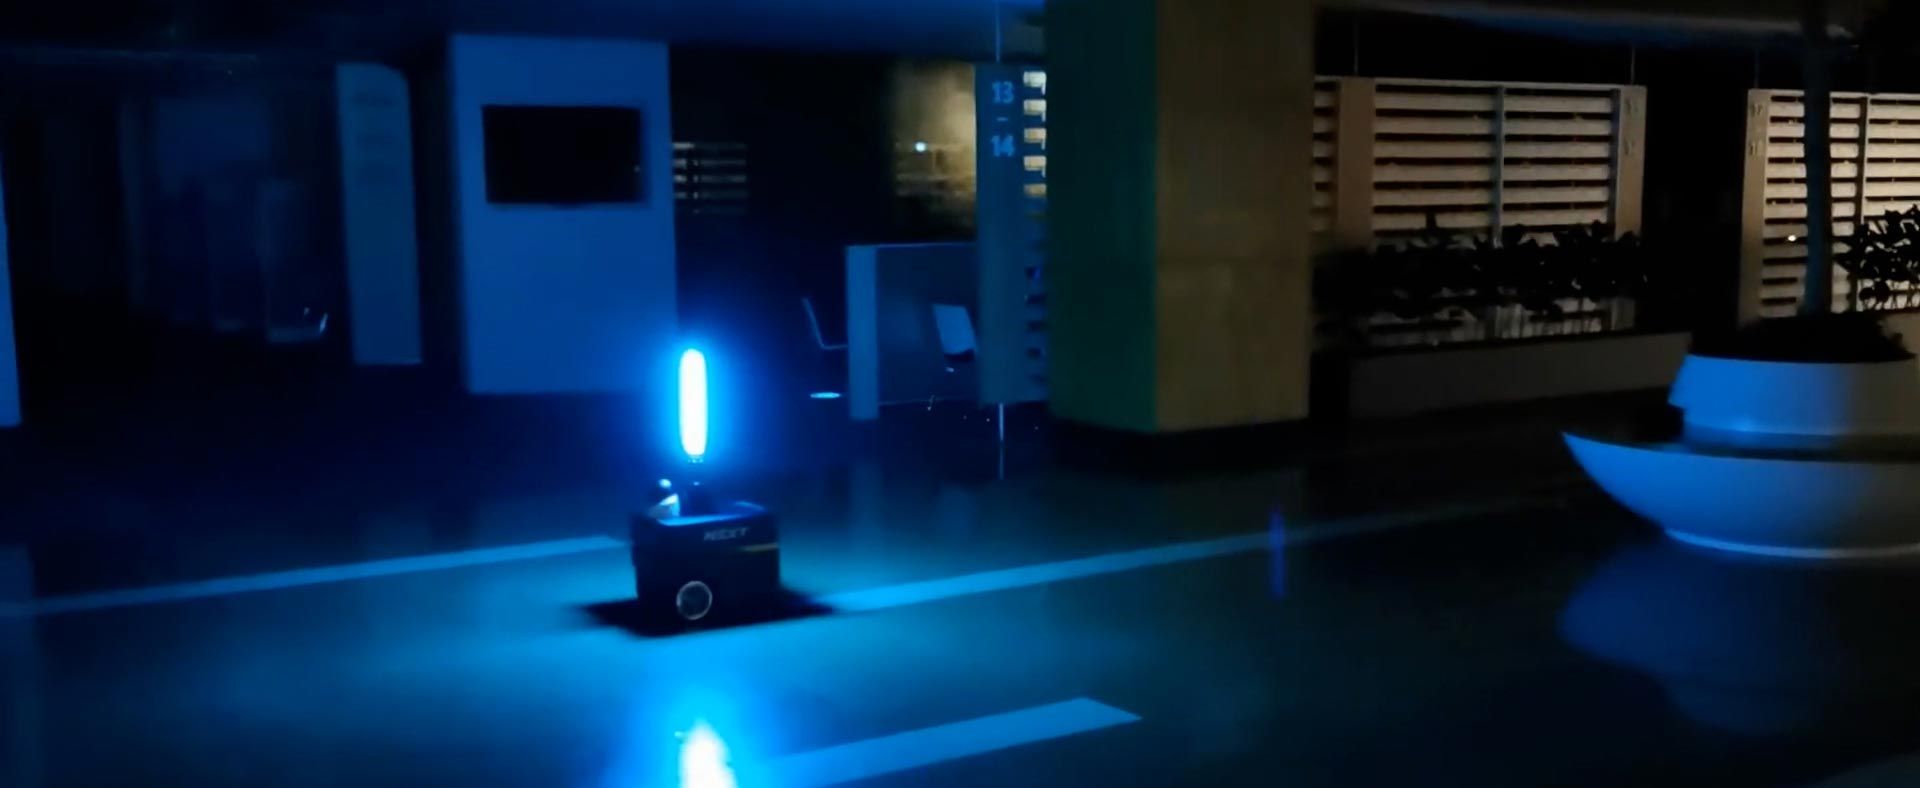 一个安装有紫外线灯的自主机器人在商业空间内为建筑内部消毒。